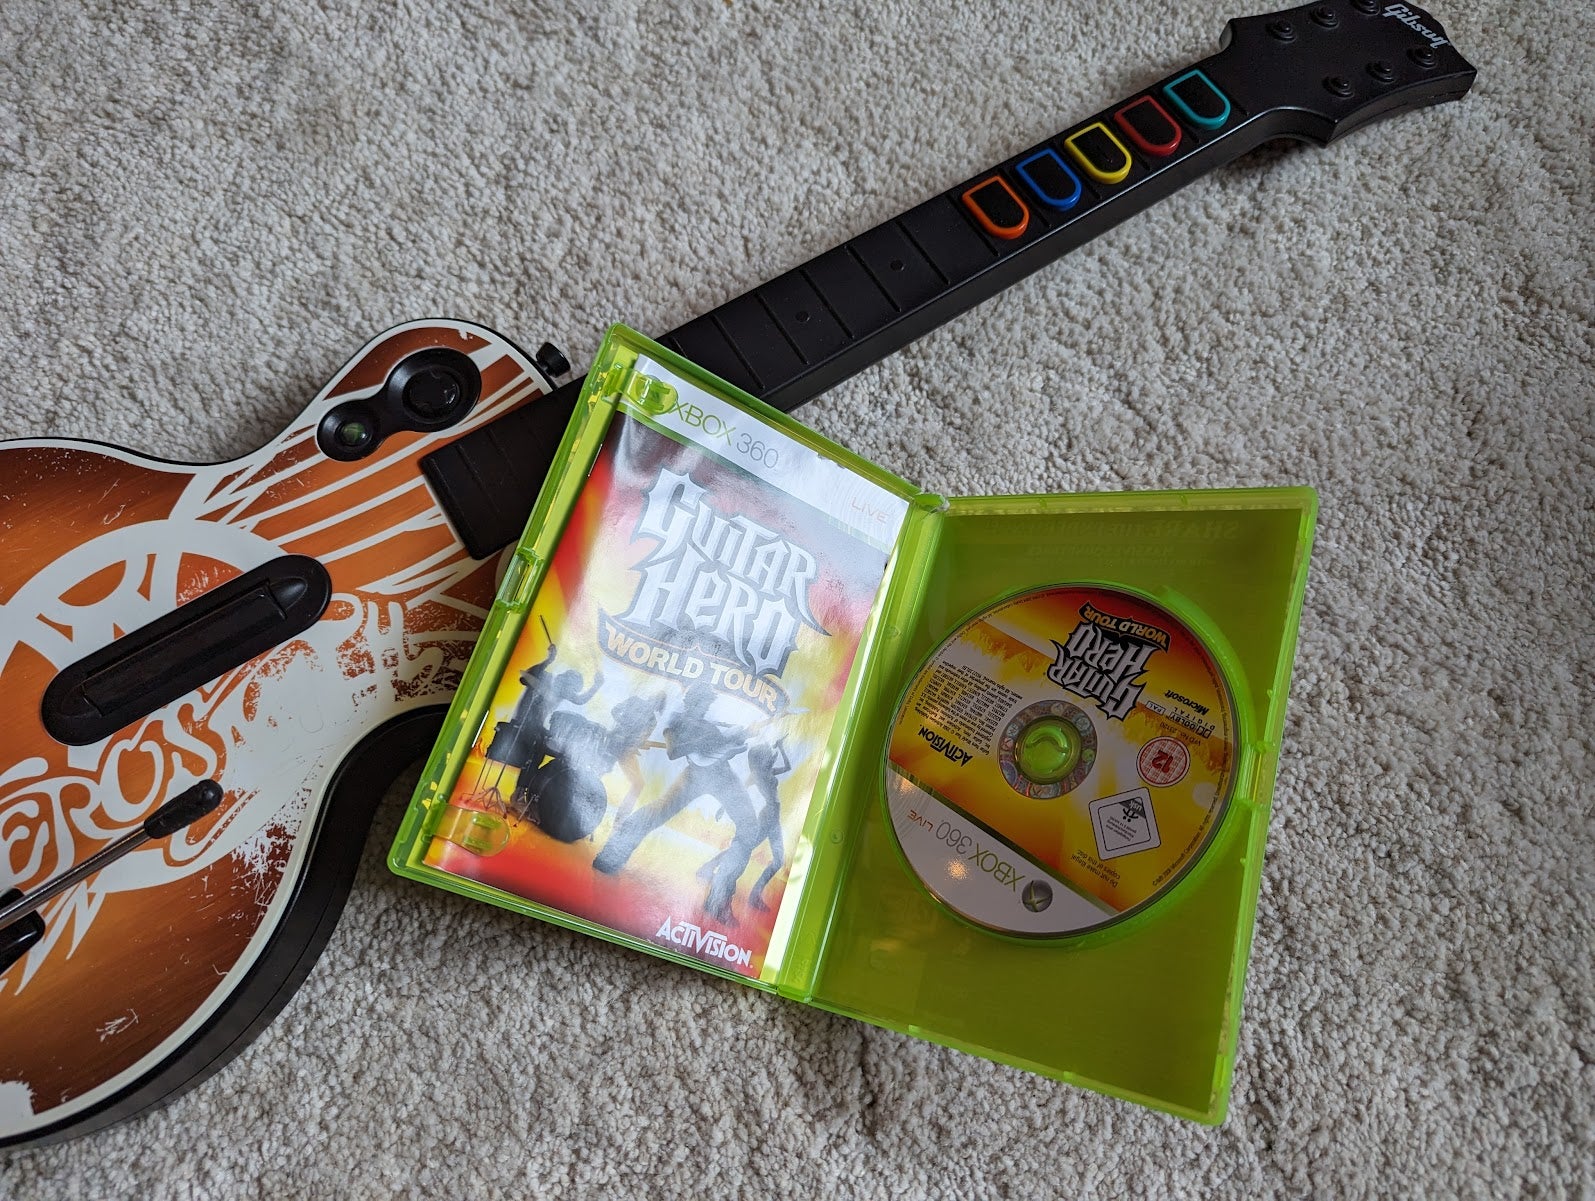 Guitar Hero World Tour + Controller, Xbox 360, anden genre